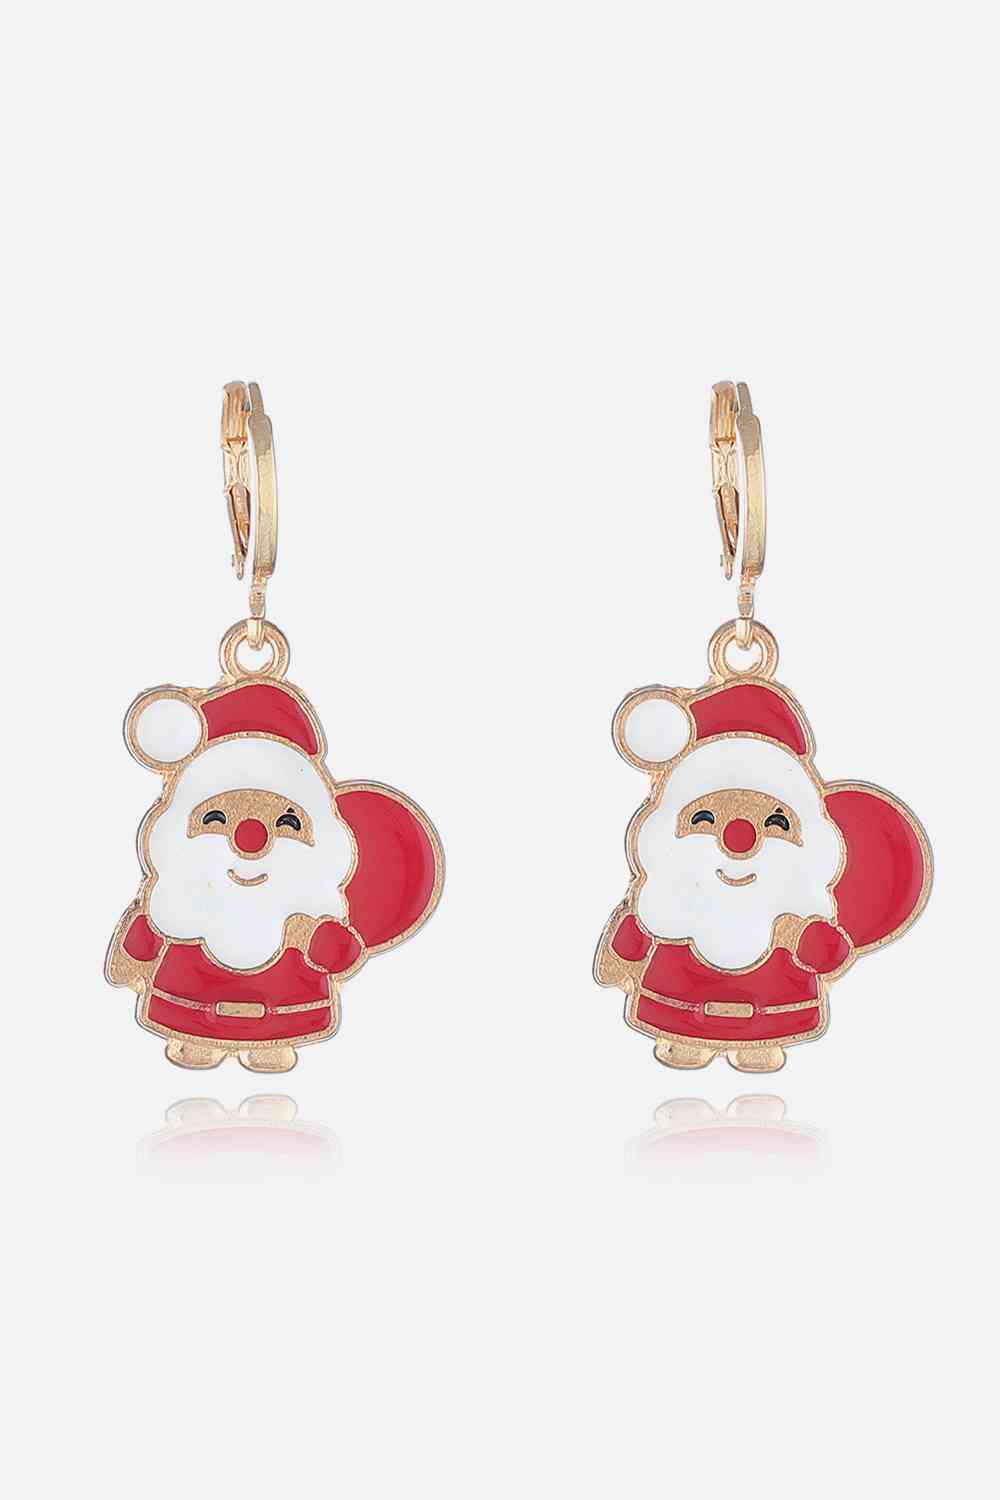 Christmas Theme Alloy Earrings - Style L / One Size - Women’s Jewelry - Earrings - 2 - 2024